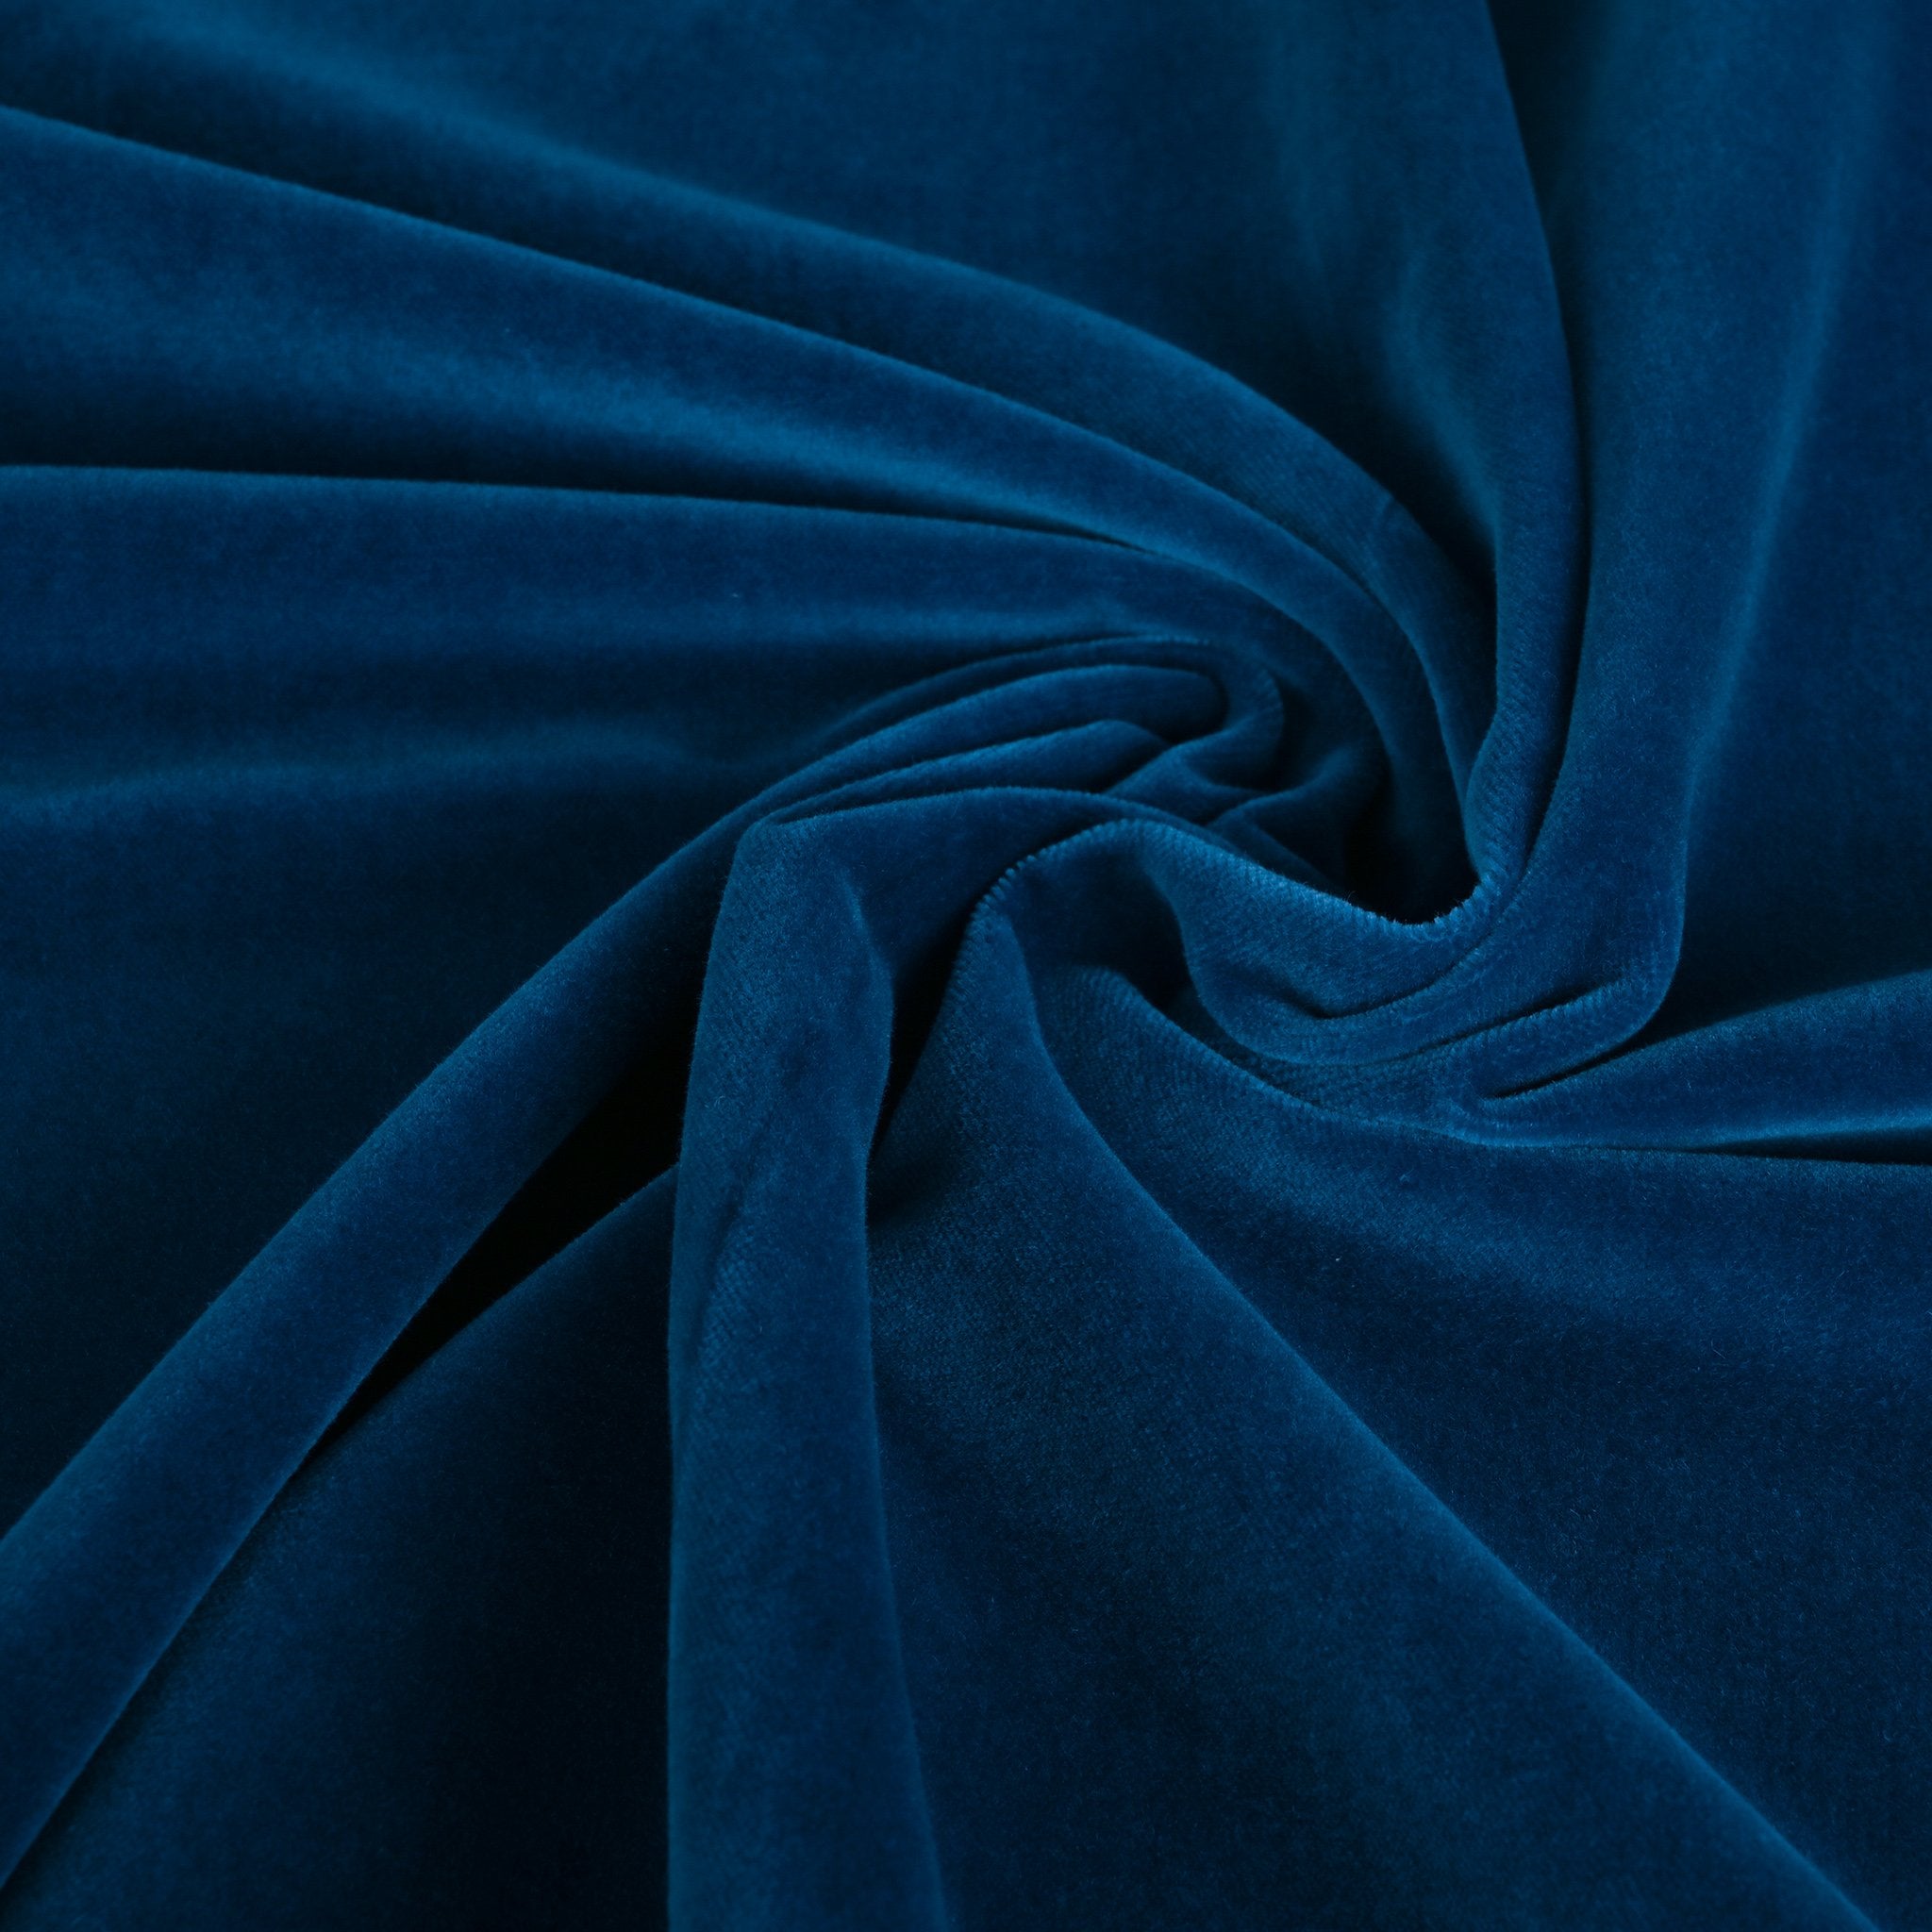 Cobalt Blue Velvet Fabric 6314